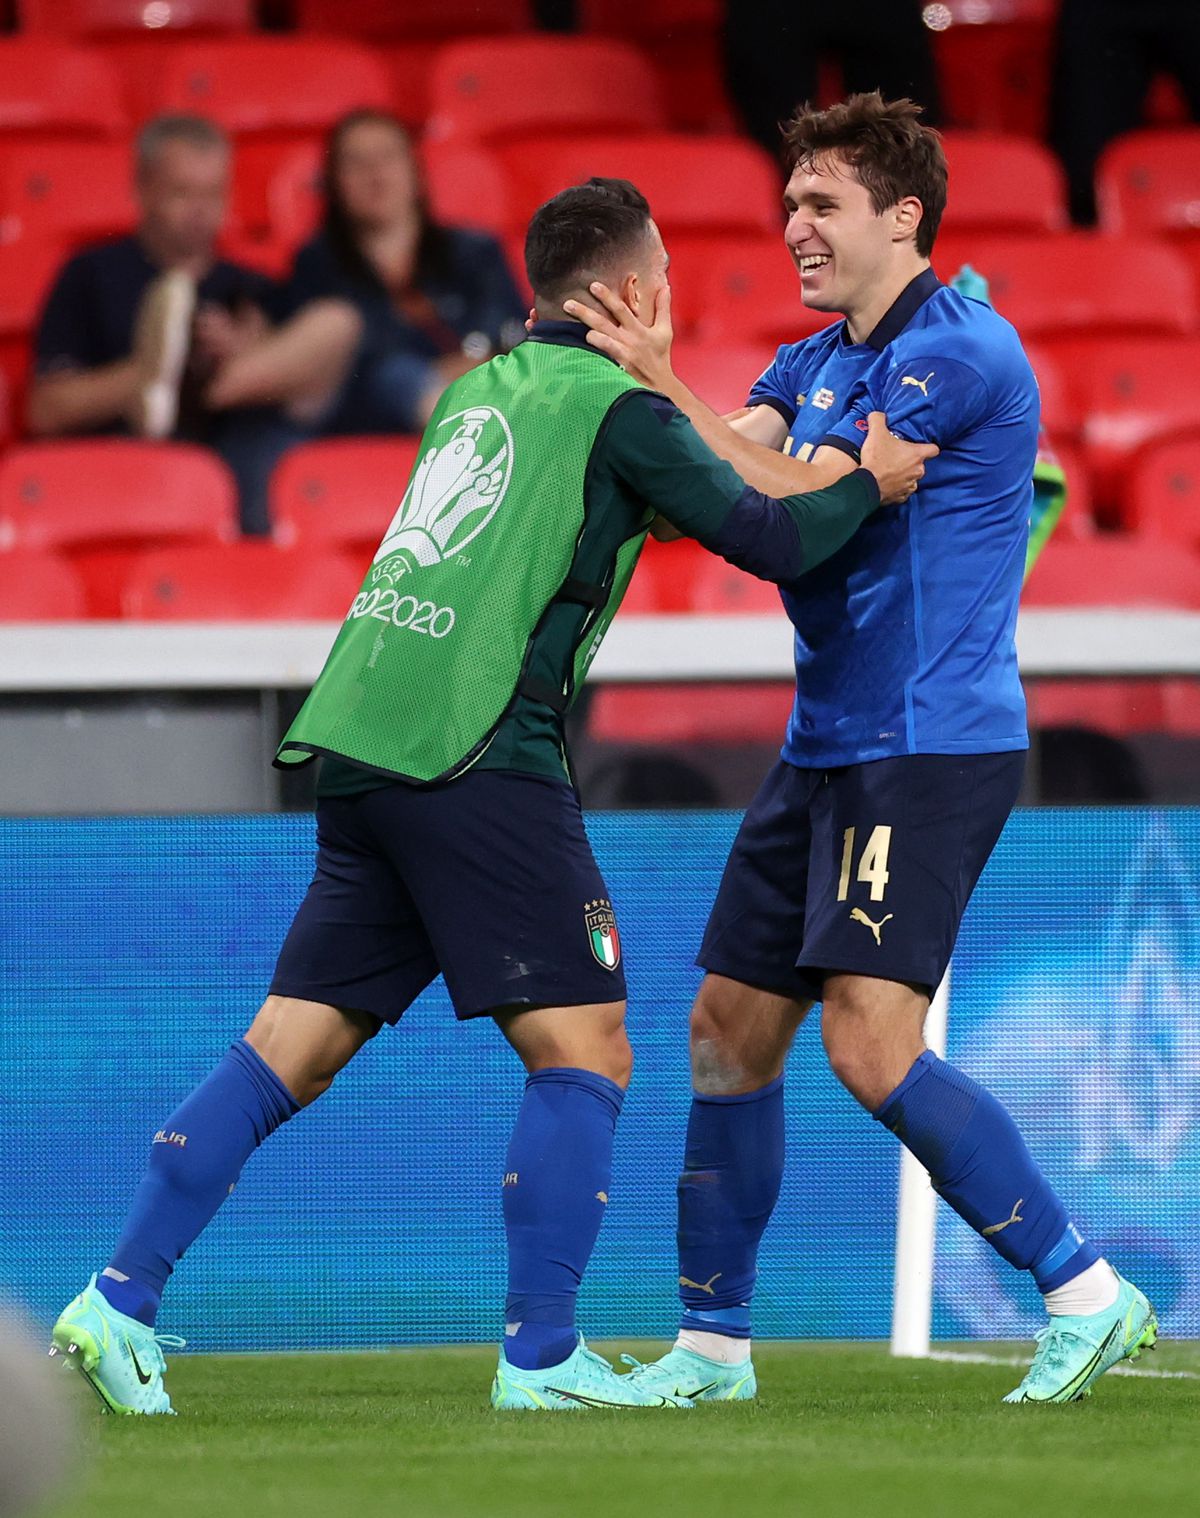 Imaginea bucuriei pe Wembley » Roberto Mancini și Gianluca Vialli, îmbrățișare emoționantă după calificarea Italiei + ce spune Zenga despre imaginile care fac înconjurul lumii